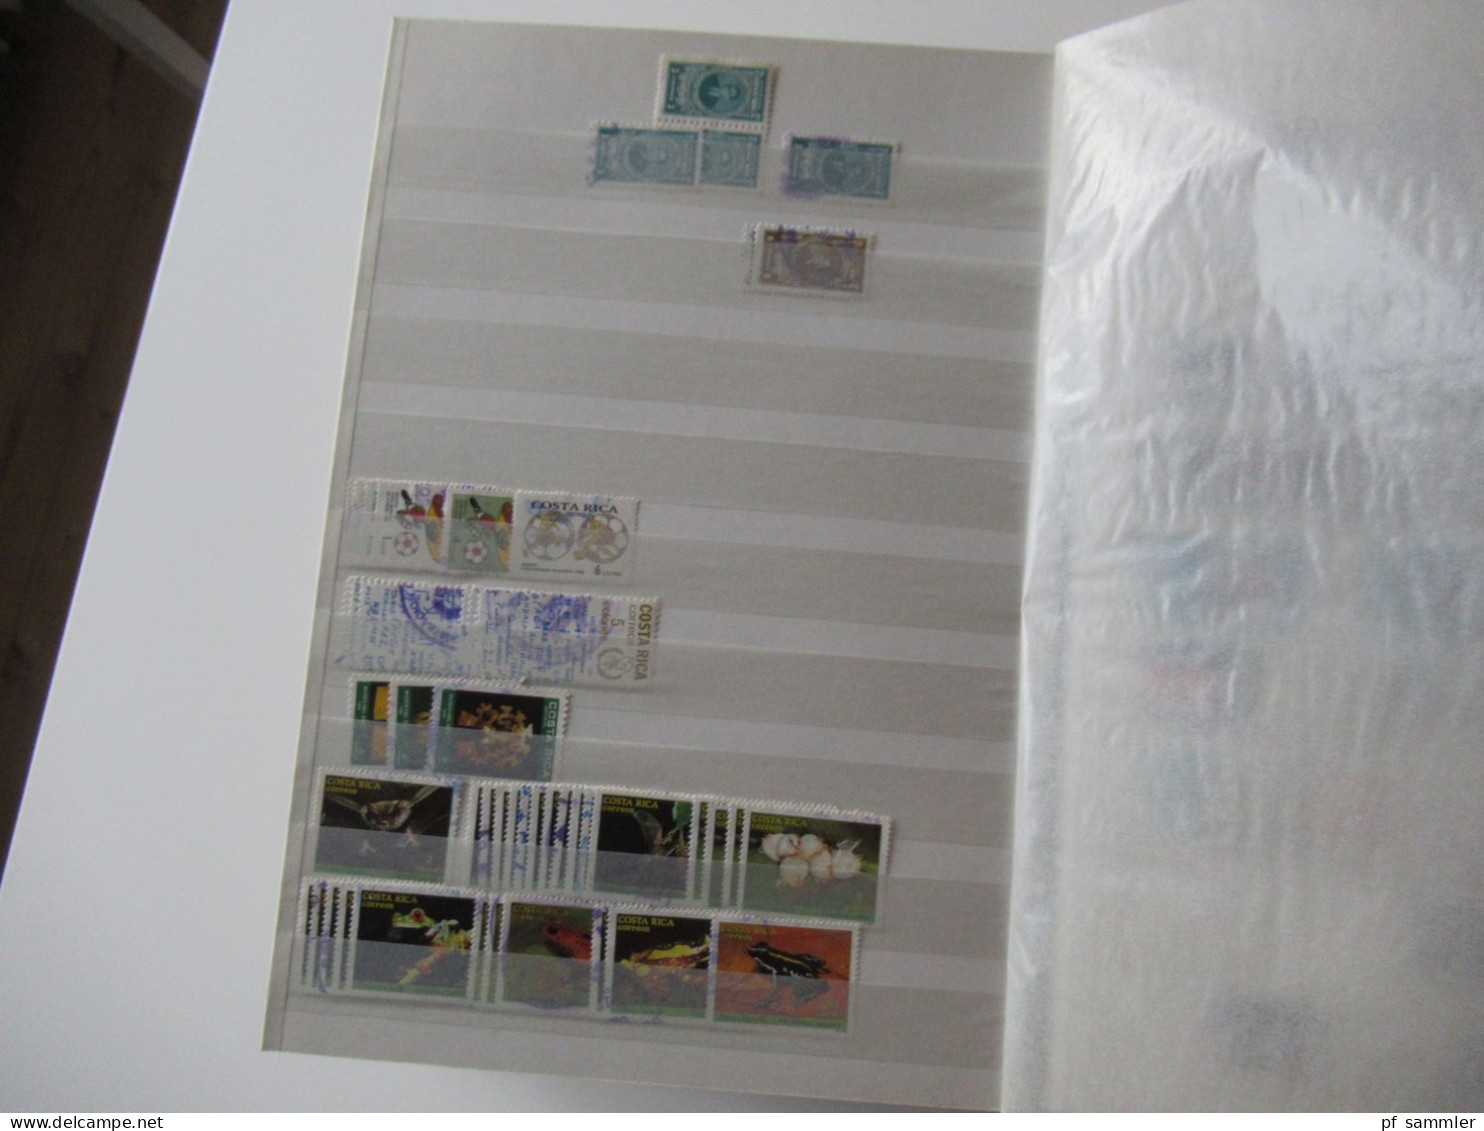 Sammlung / interessantes Album / Lagerbuch Übersee Costa Rica und Cuba - 2000er viele gestempelte Marken / Fundgrube